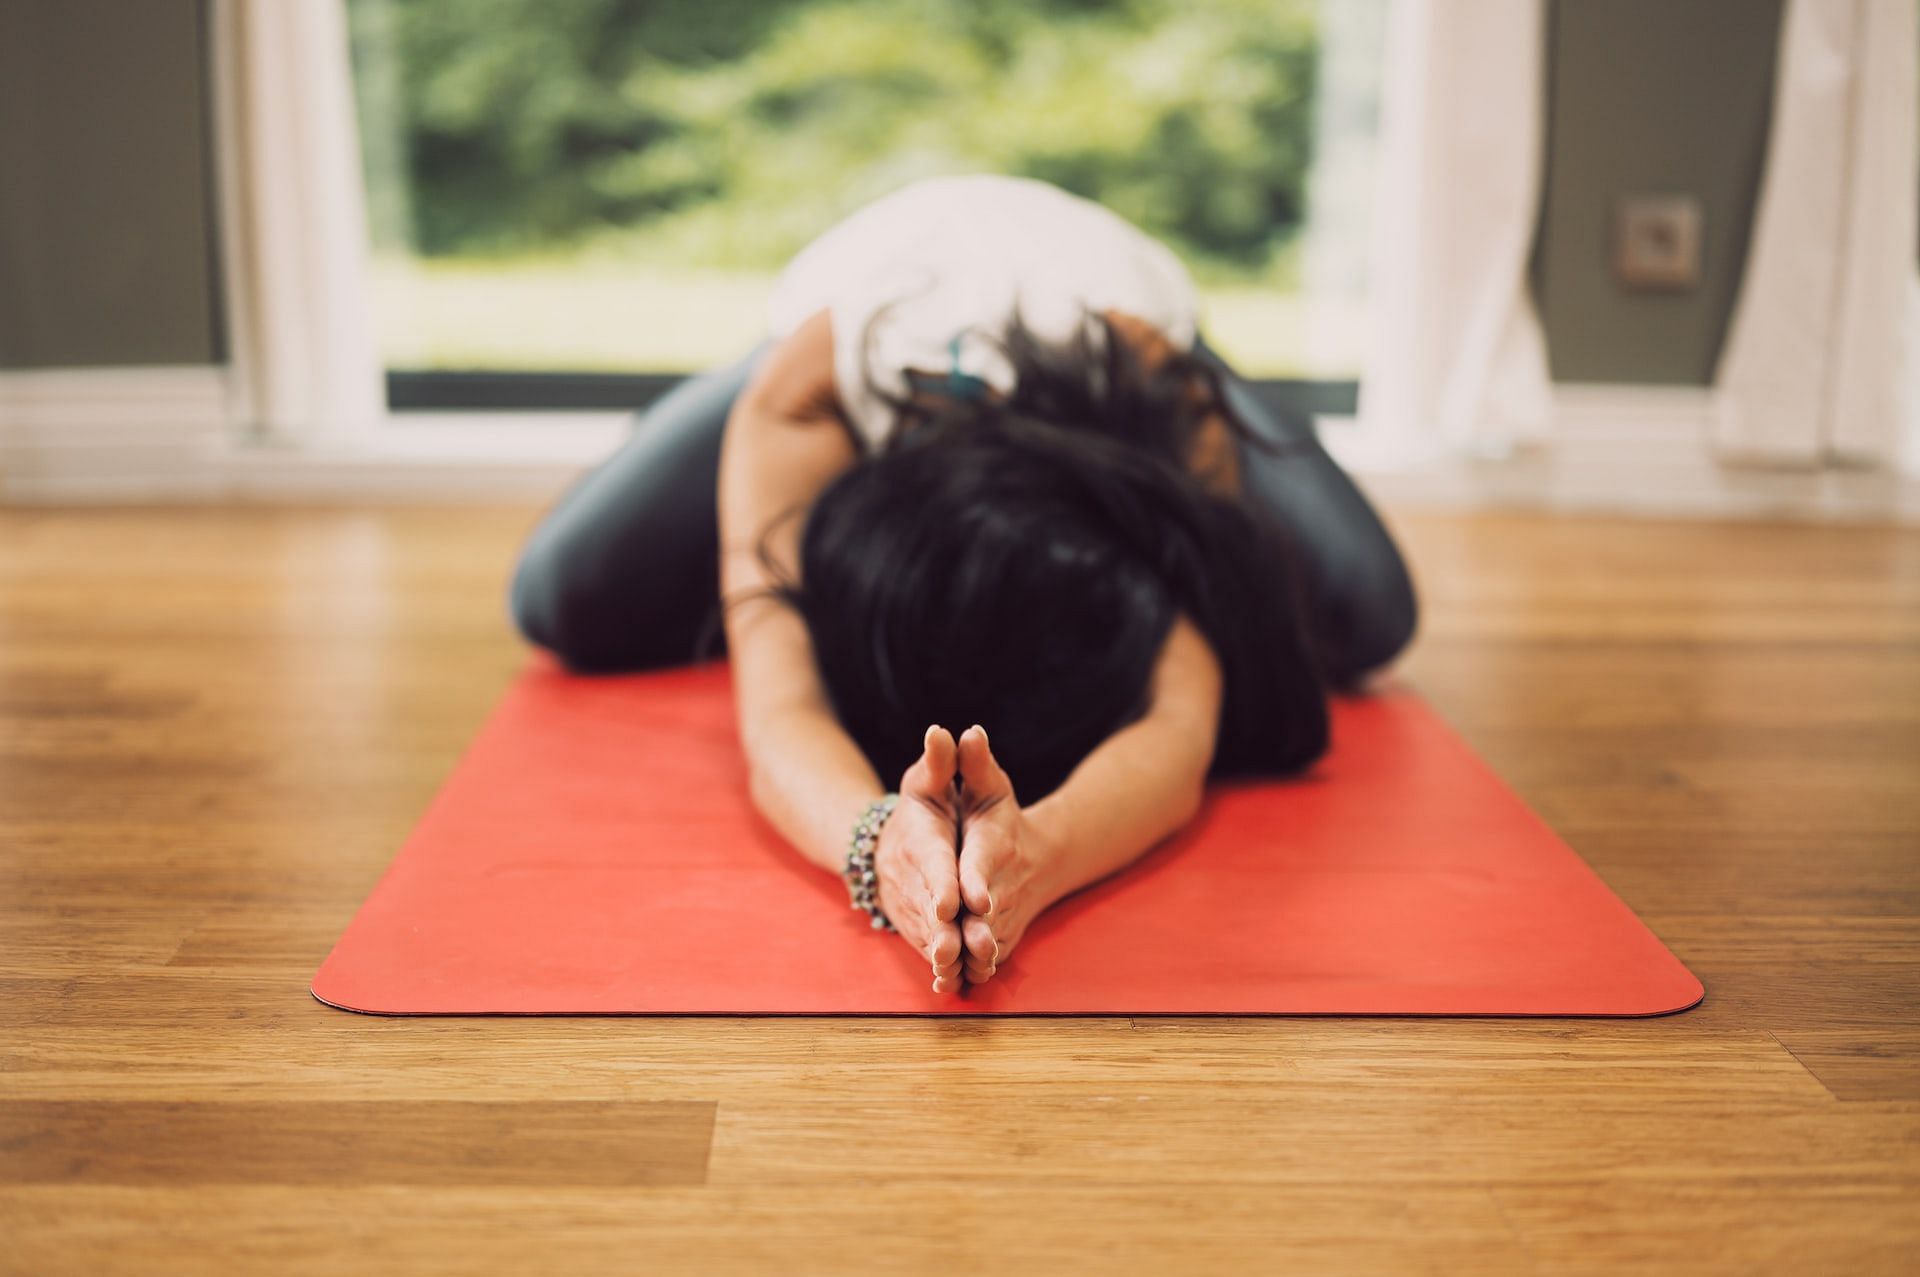 Yoga exercises help prevent gut problems. (Photo via unsplash/Conscious Design)